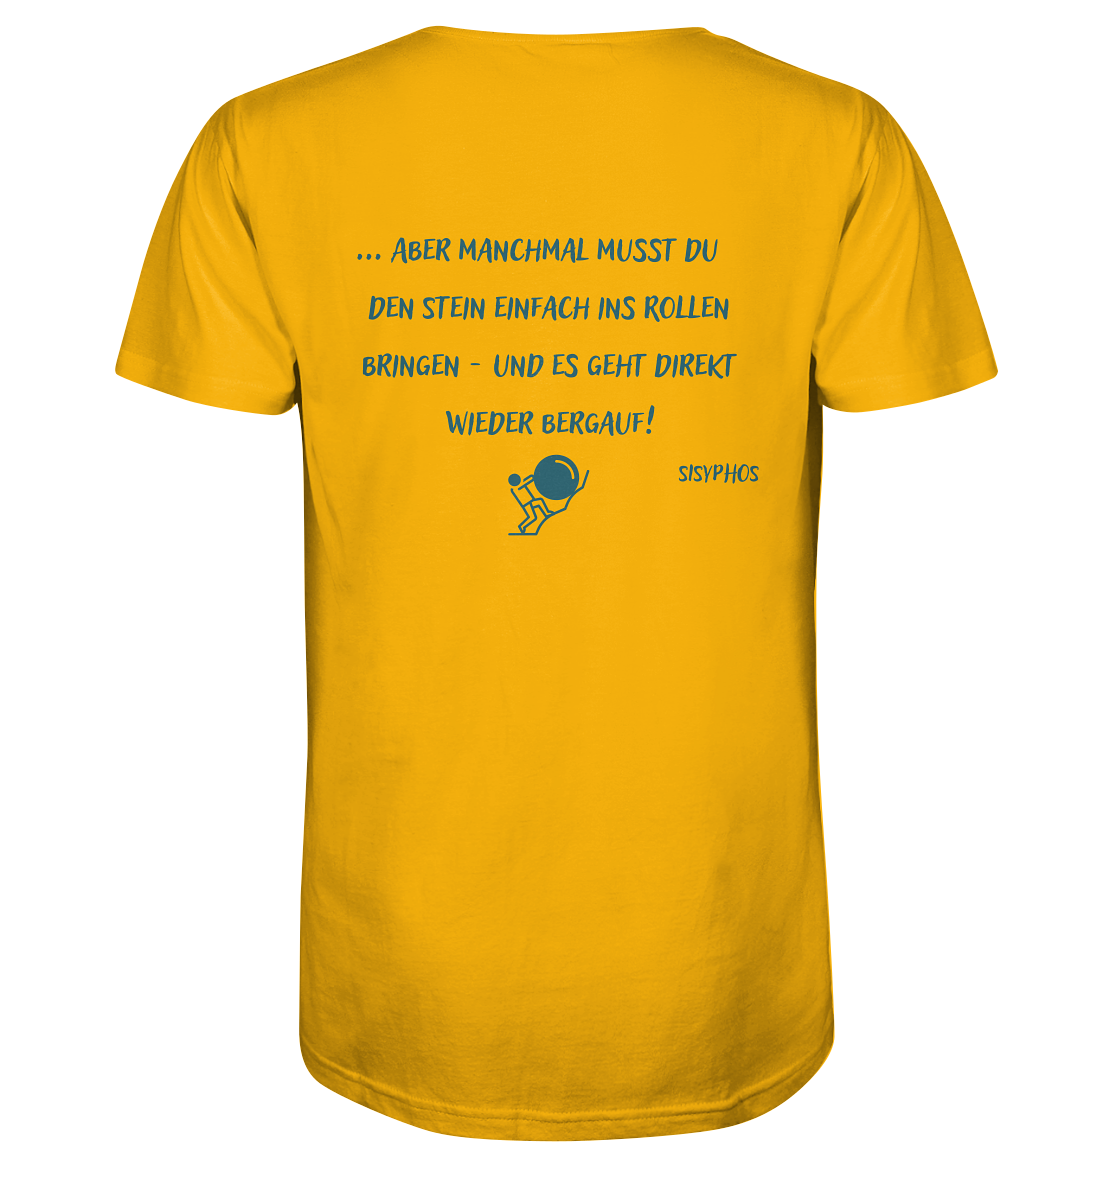 Ein gelbes T-Shirt mit einem poetischen Zitat von Sisyphos - Kraftakt / Tragik des Lebens - Variante Berg | Bio-Shirt von Artbookings, ideal für Poetry-Slam-Merchandise.